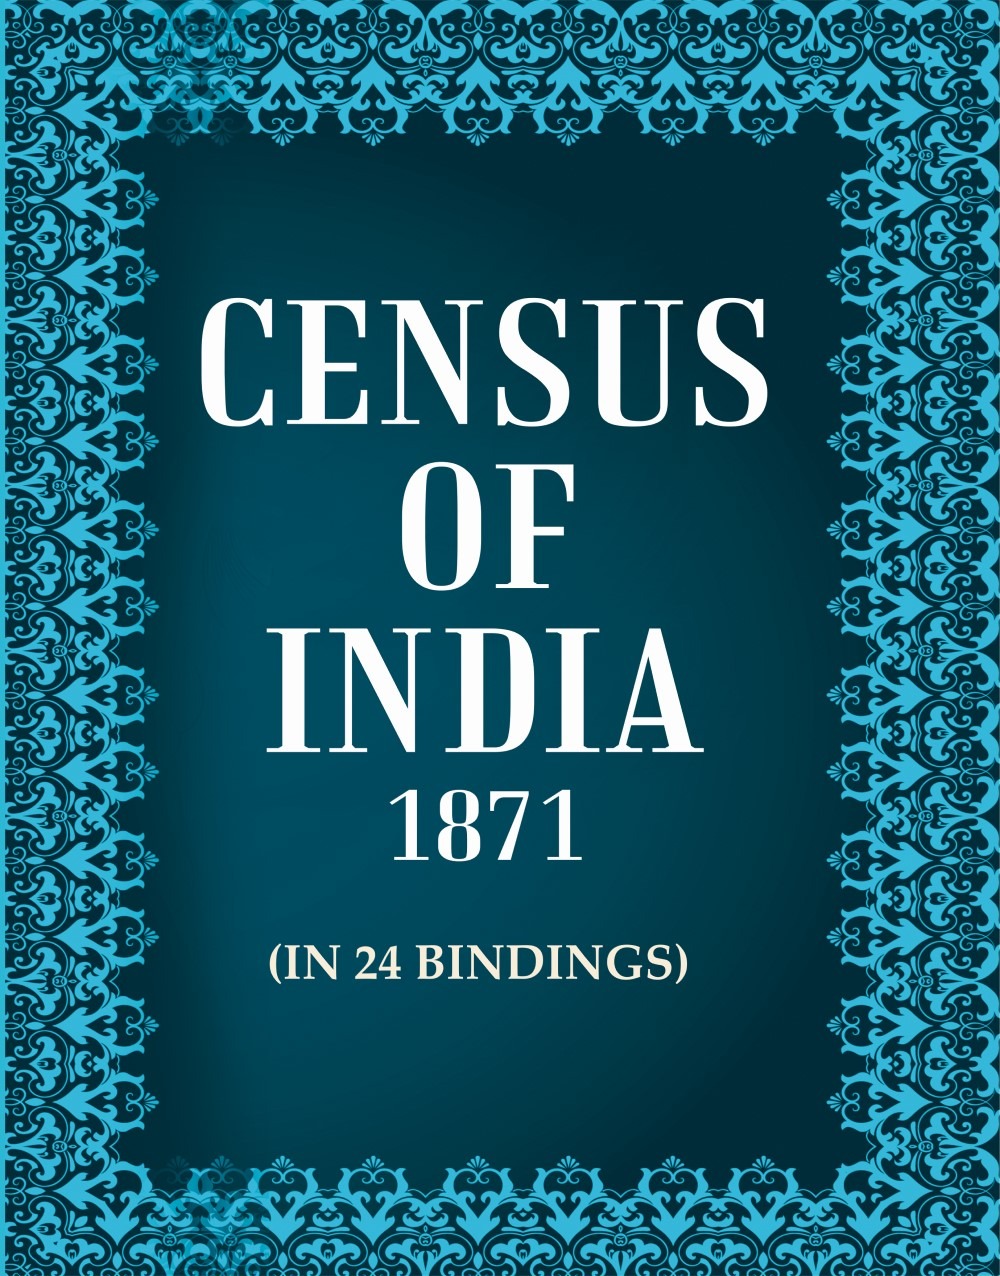 Census of India 1871 In 24 Bindings In 24 Bindings In 24 Bindings In 24 Bindings In 24 Bindings In 24 Bindings In 24 Bindings In 24 Bindings In 24 Bindings In 24 Bindings In 24 Bindings In 24 Bindings In 24 Bindings In 24 Bindings In 24 Bindings In 24 Bindings In 24 Bindings In 24 Bindings In 24 Bindings In 24 Bindings In 24 Bindings In 24 Bindings In 24 Bindings In 24 Bindings In 24 Bindings In 24 Bindings In 24 Bindings In 24 Bindings In 24 Bindings In 24 Bindings In 24 Bindings In 24 Bindings In 24 Bindings In 24 Bindings In 24 Bindings In 24 Bindings